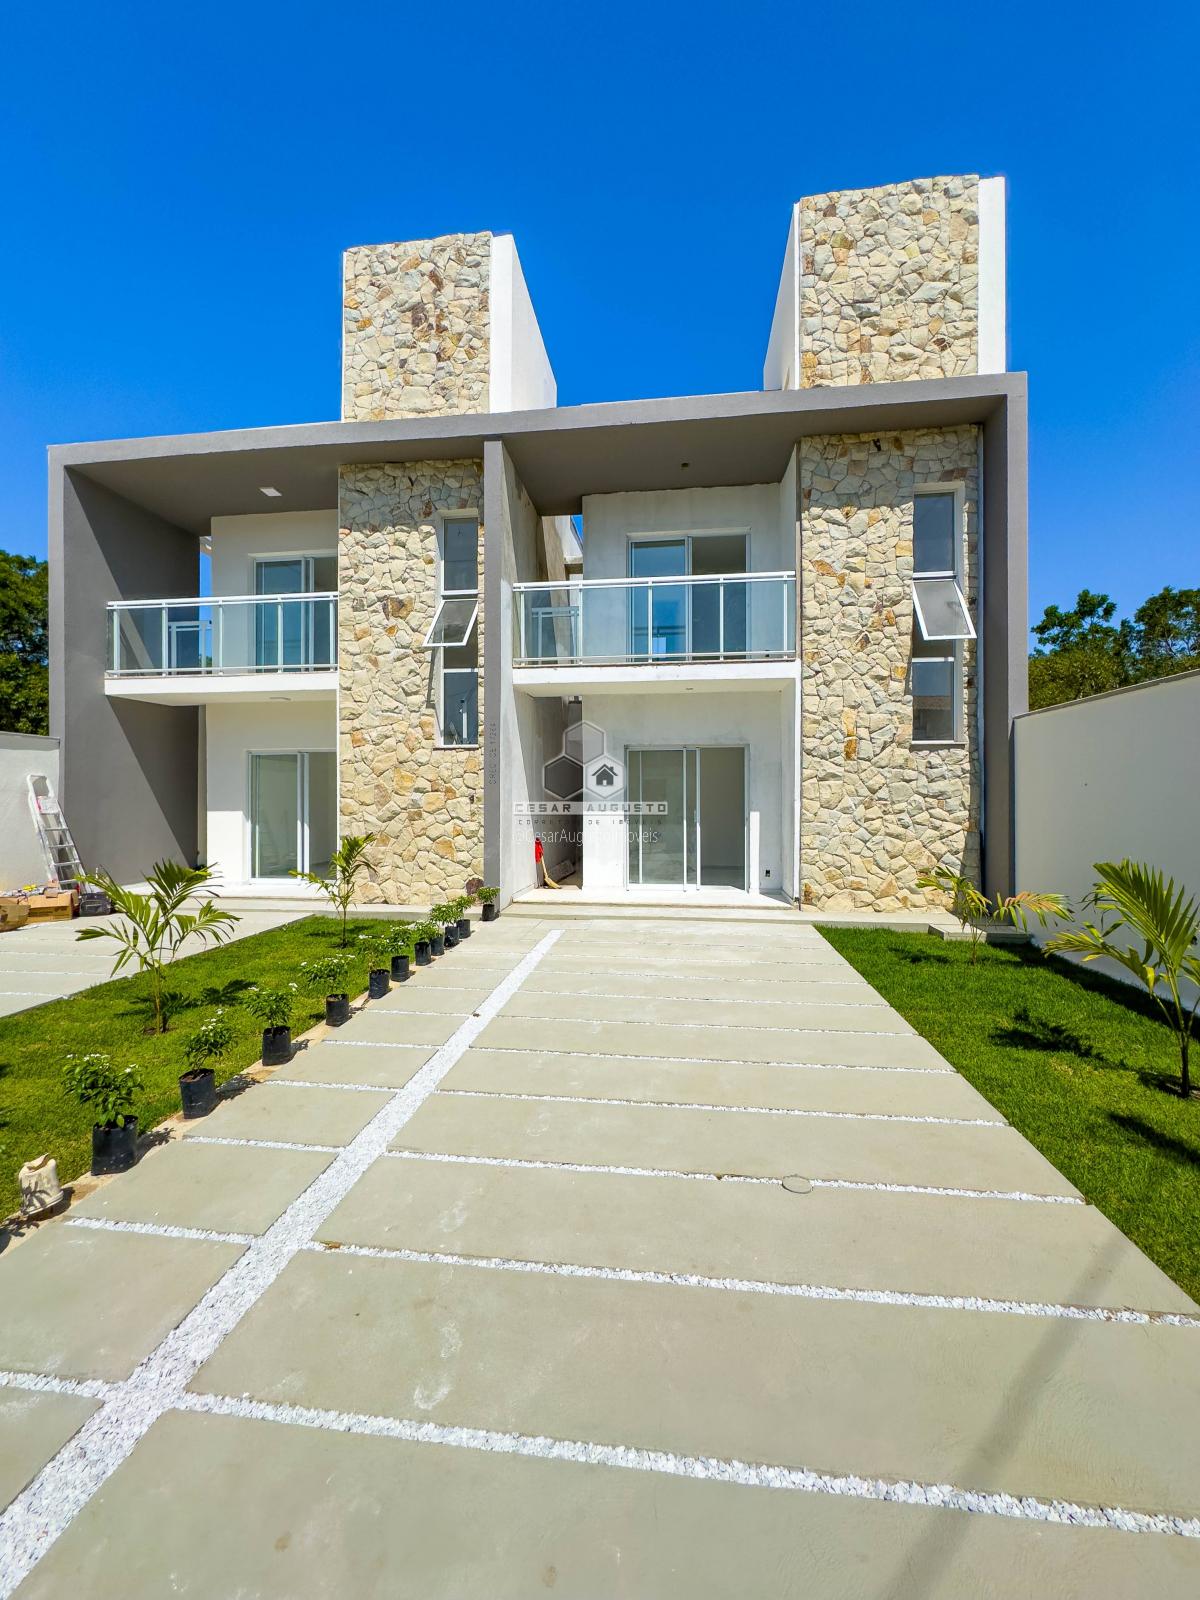 Residencial Quintas - Casas duplex de luxo com 03 suites no Eusébio